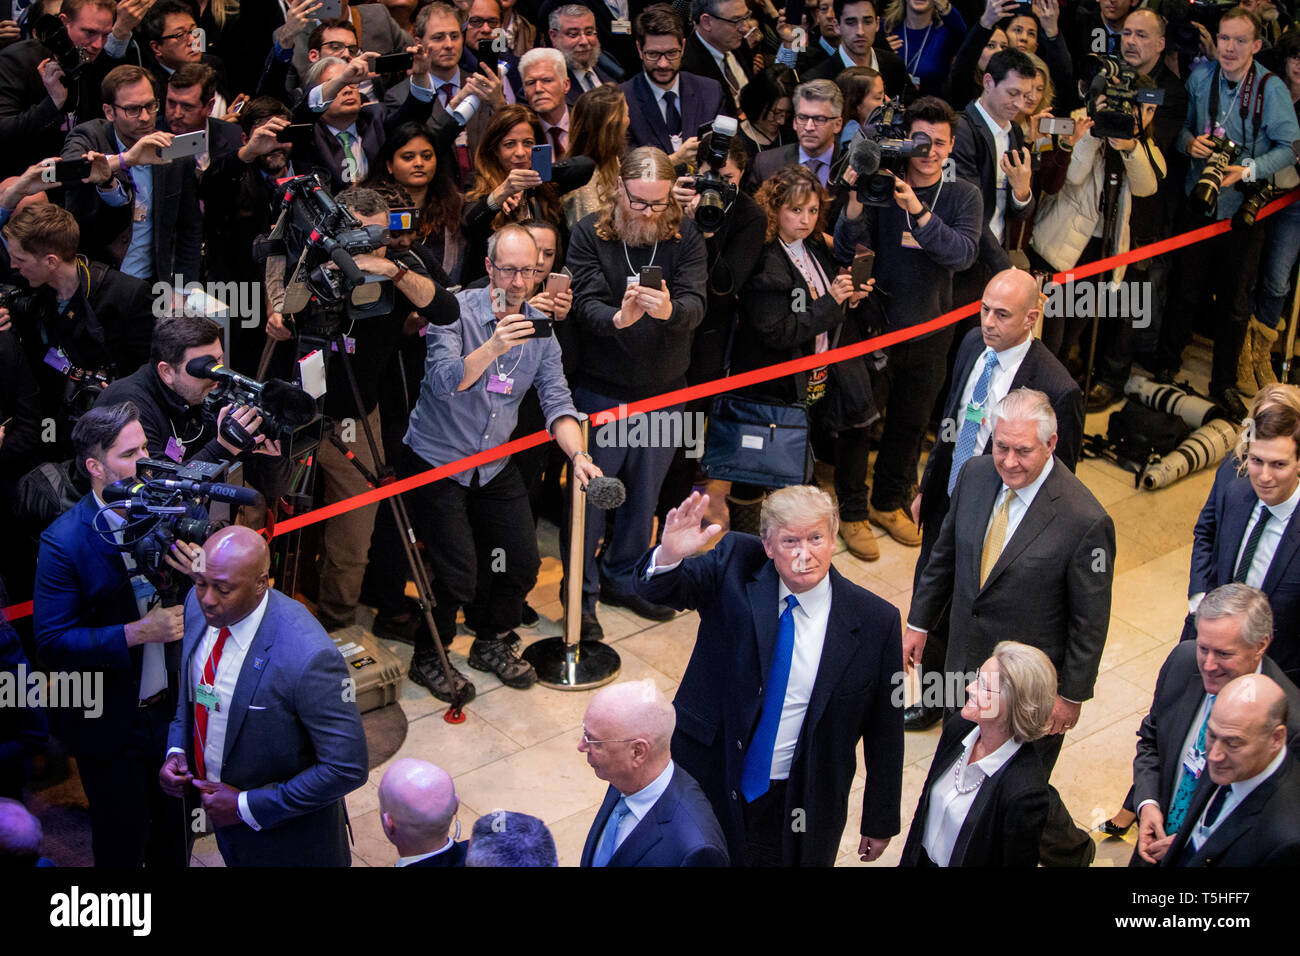 L'intérieur de la foule massive Centre des congrès de Davos, le président américain Donald J. Trump arrive pour le Forum économique mondial. Derrière lui dans l'entourage peut être vu Rex Tillerson, Mark Meadows, Jared Kushner et Gary Cohn Banque D'Images